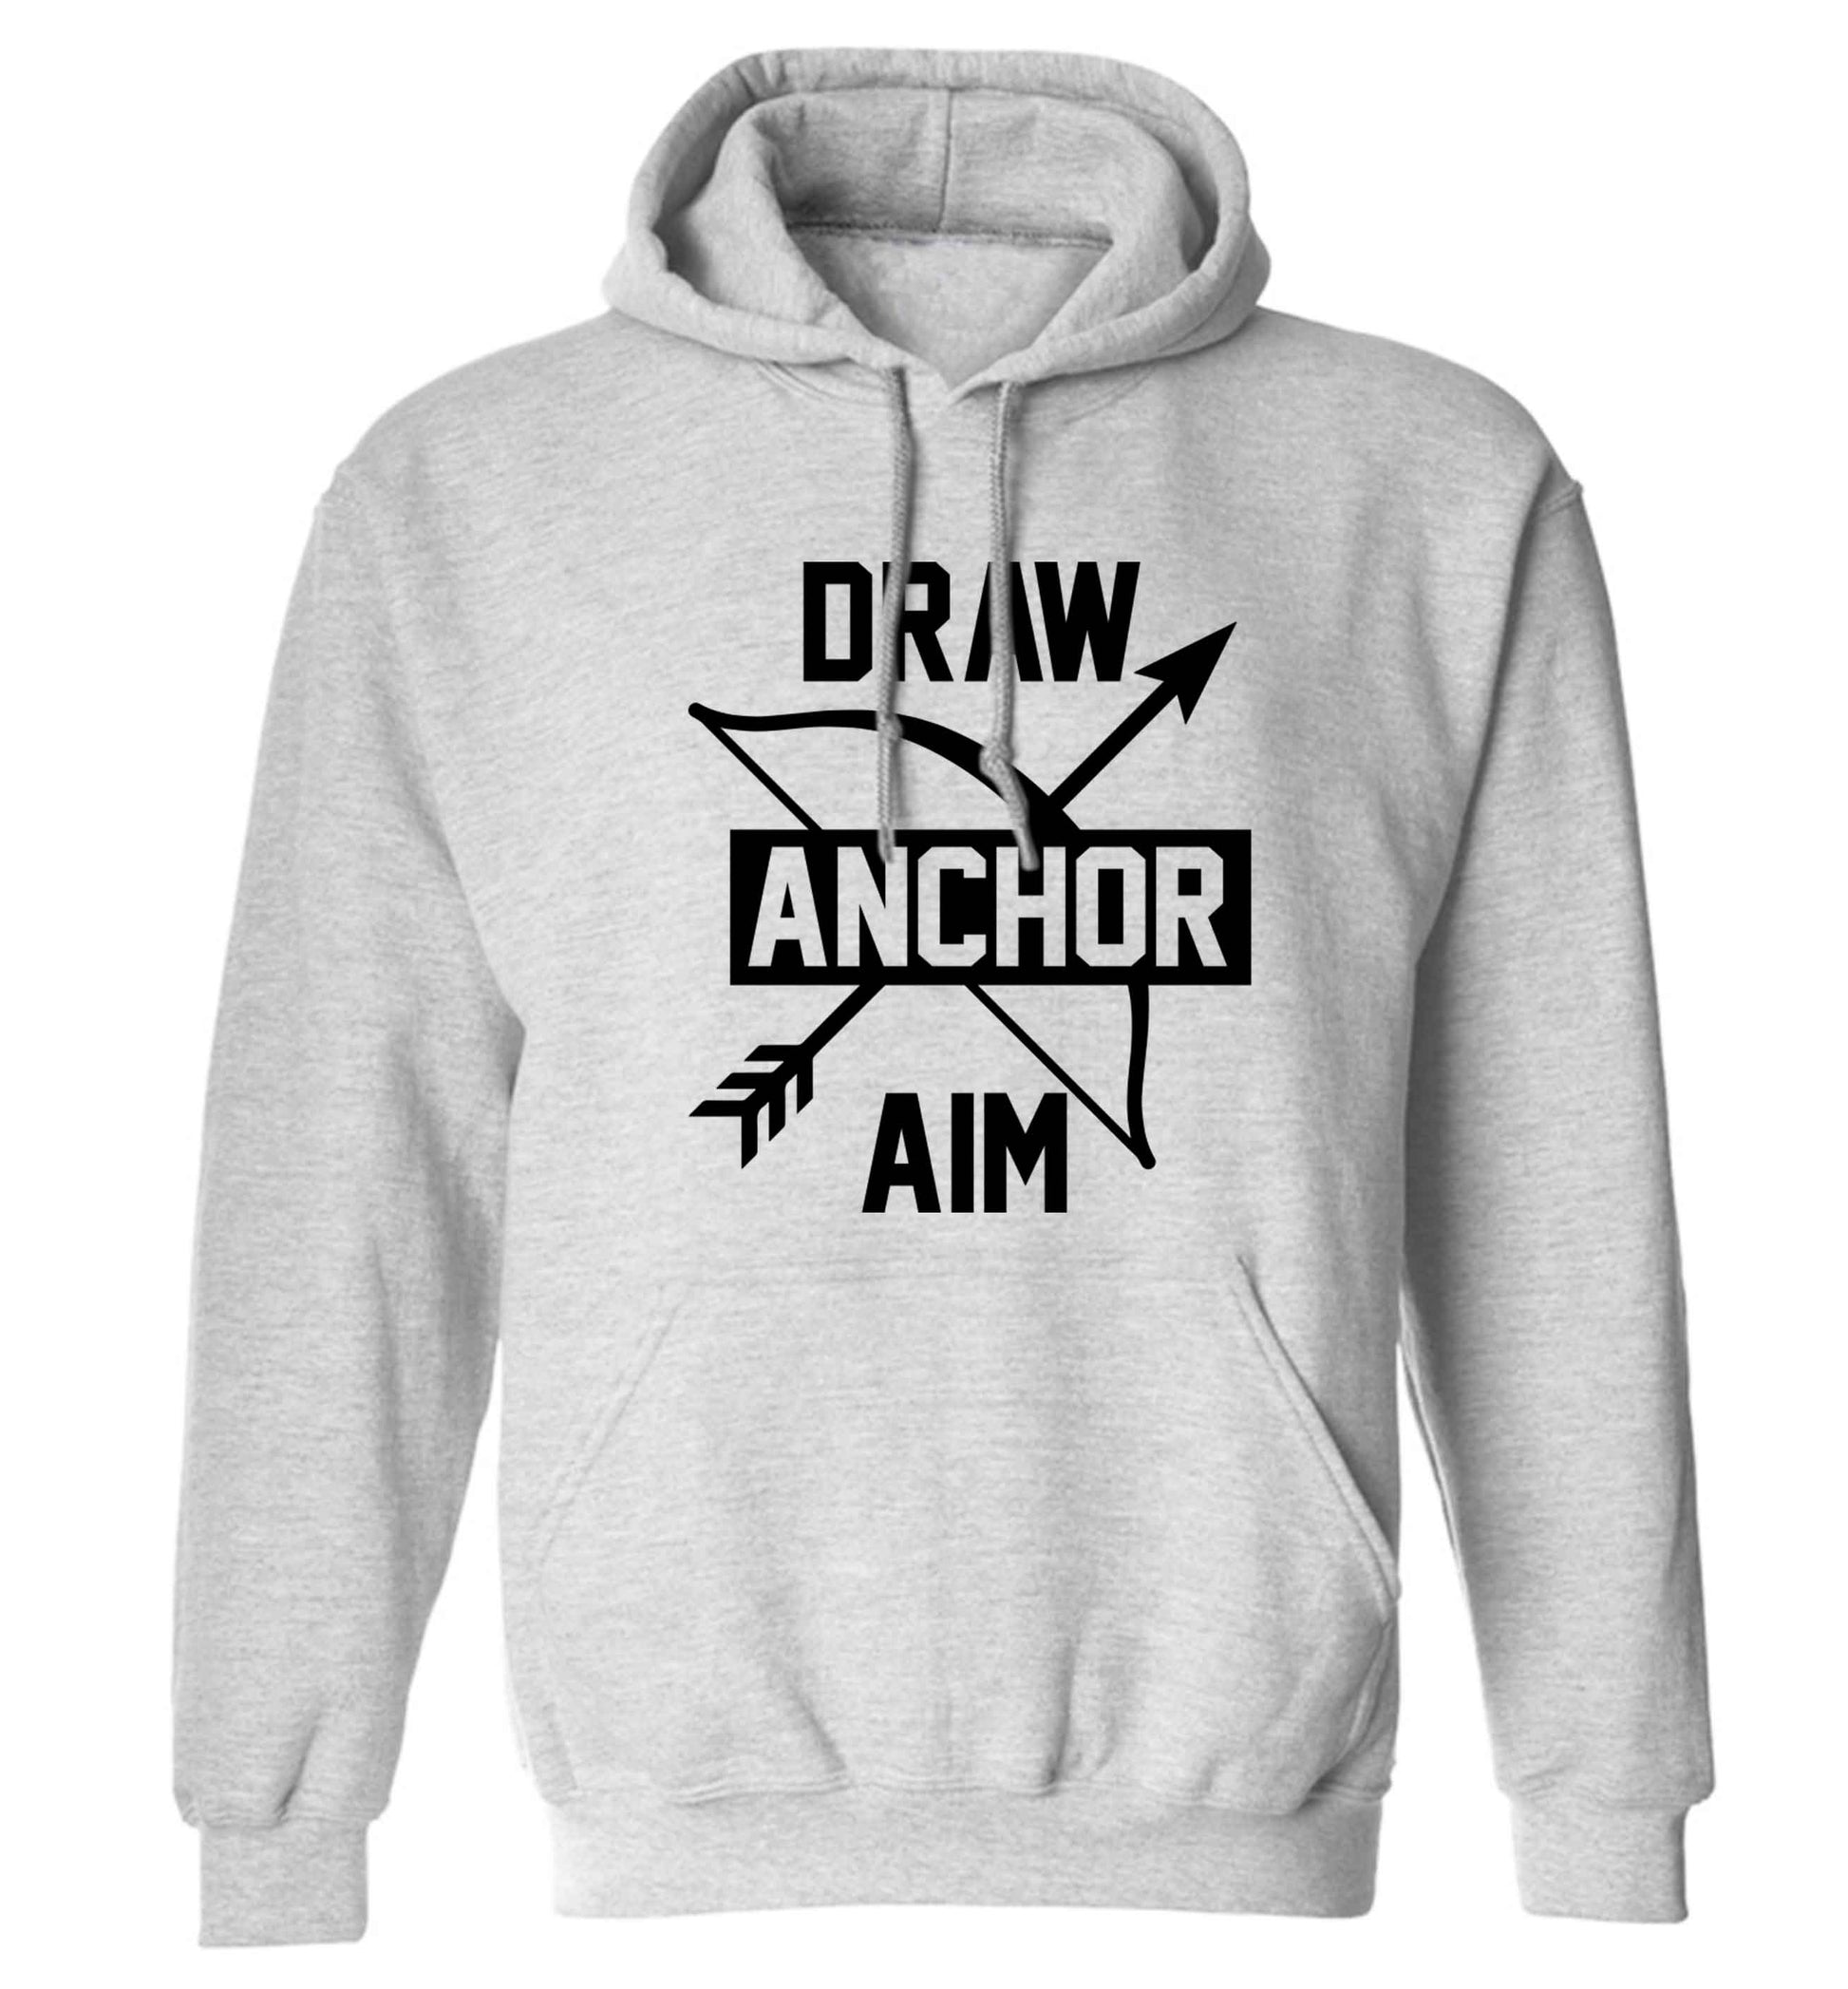 Draw anchor aim adults unisex grey hoodie 2XL